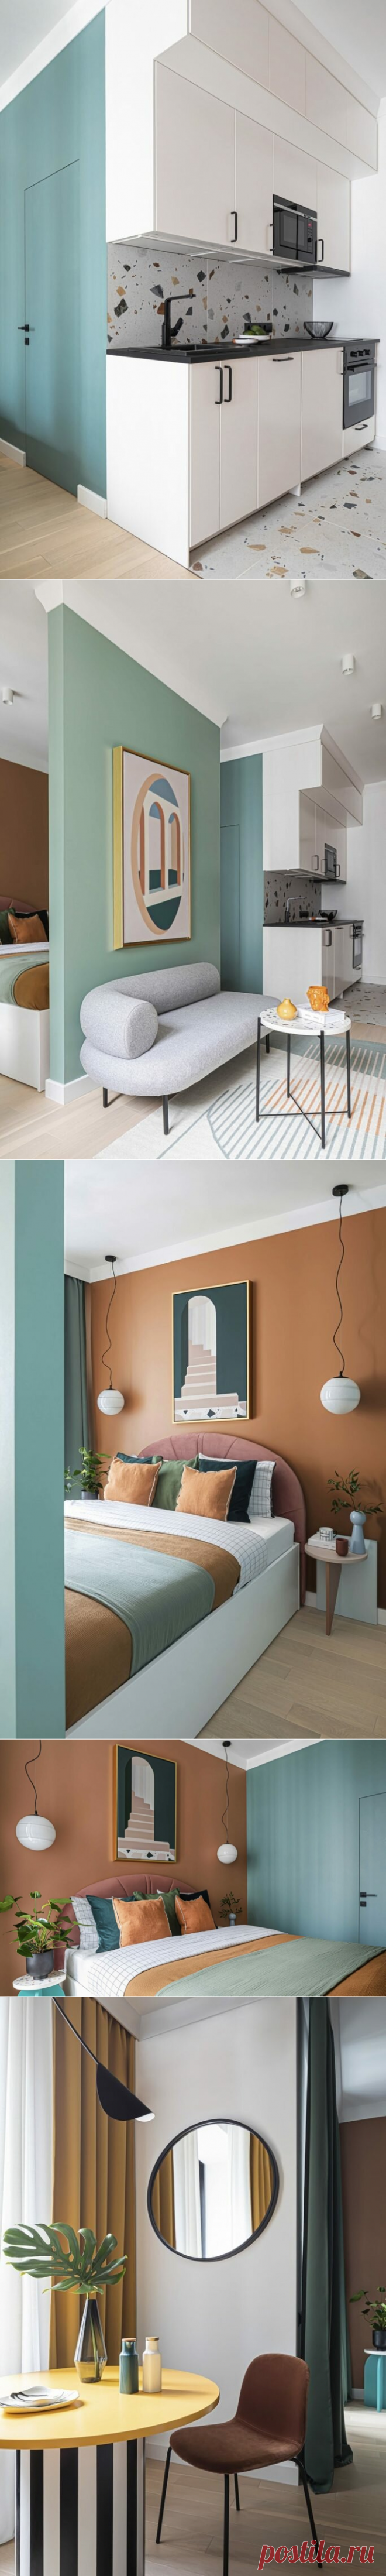 Нестандартное решение: оригинальный интерьер квартиры площадью 35 м² в стиле нео-мемфис | Architect Guide | Яндекс Дзен